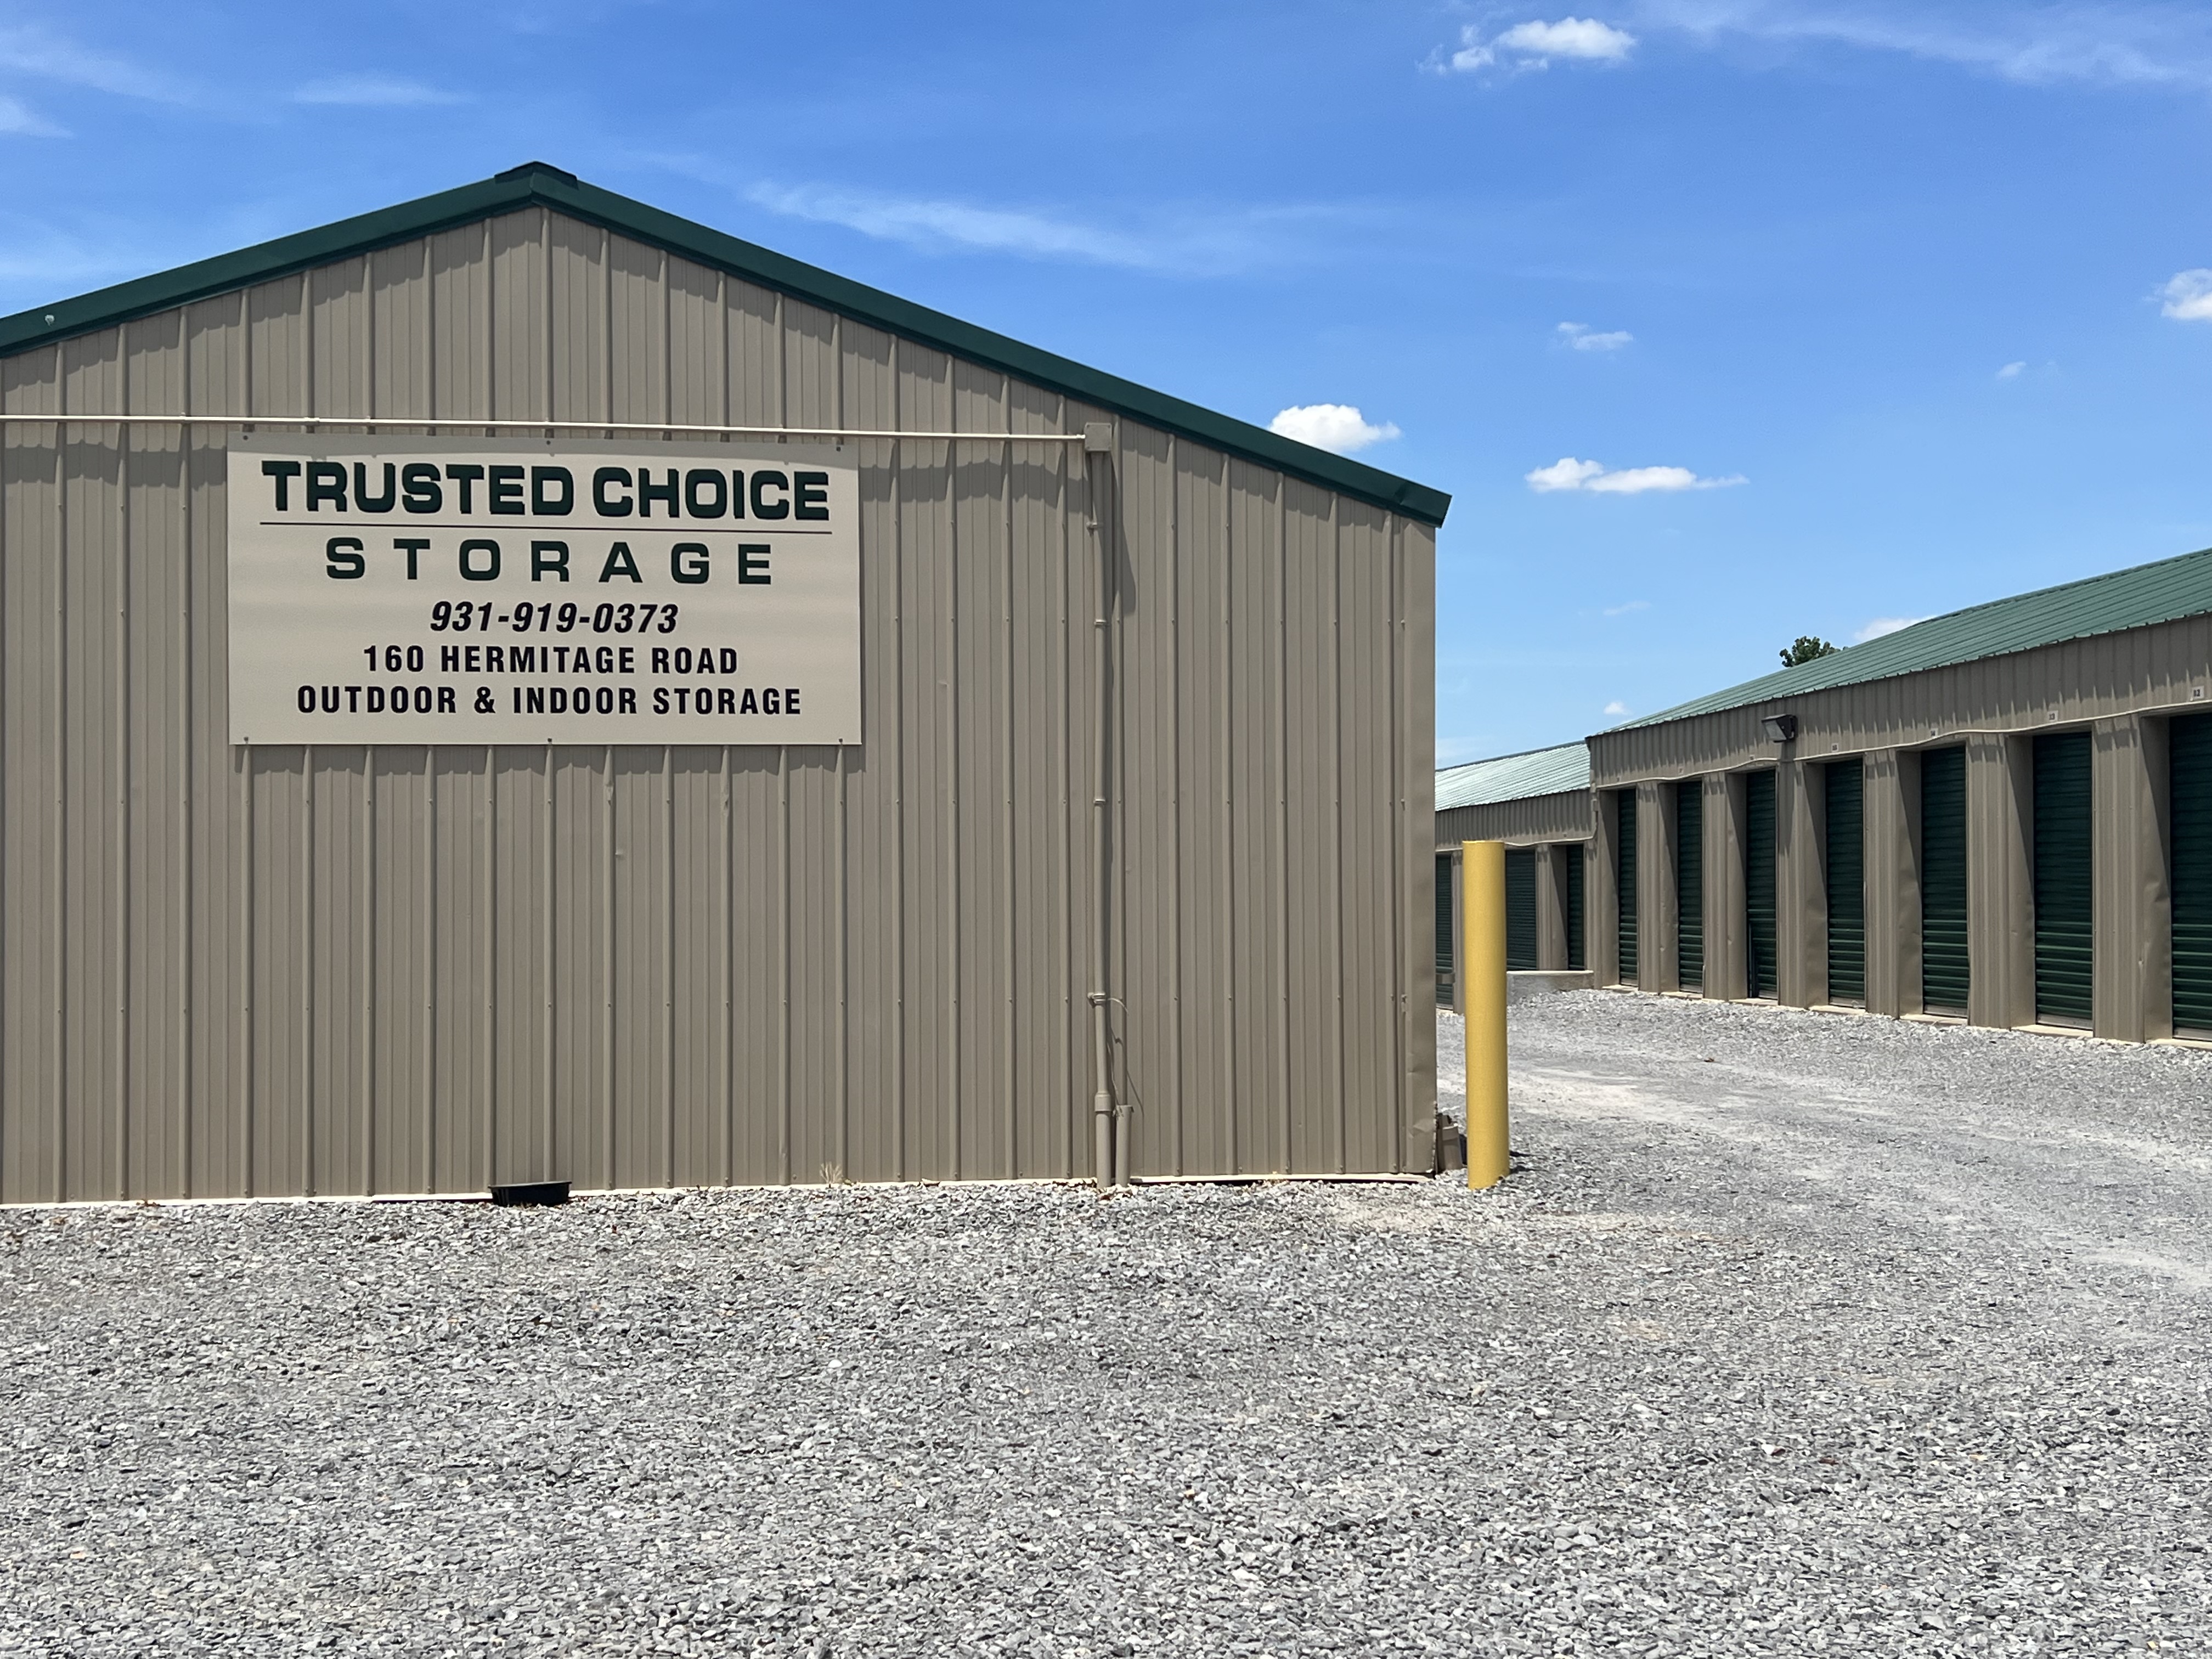 Storage Units in Clarksville TN